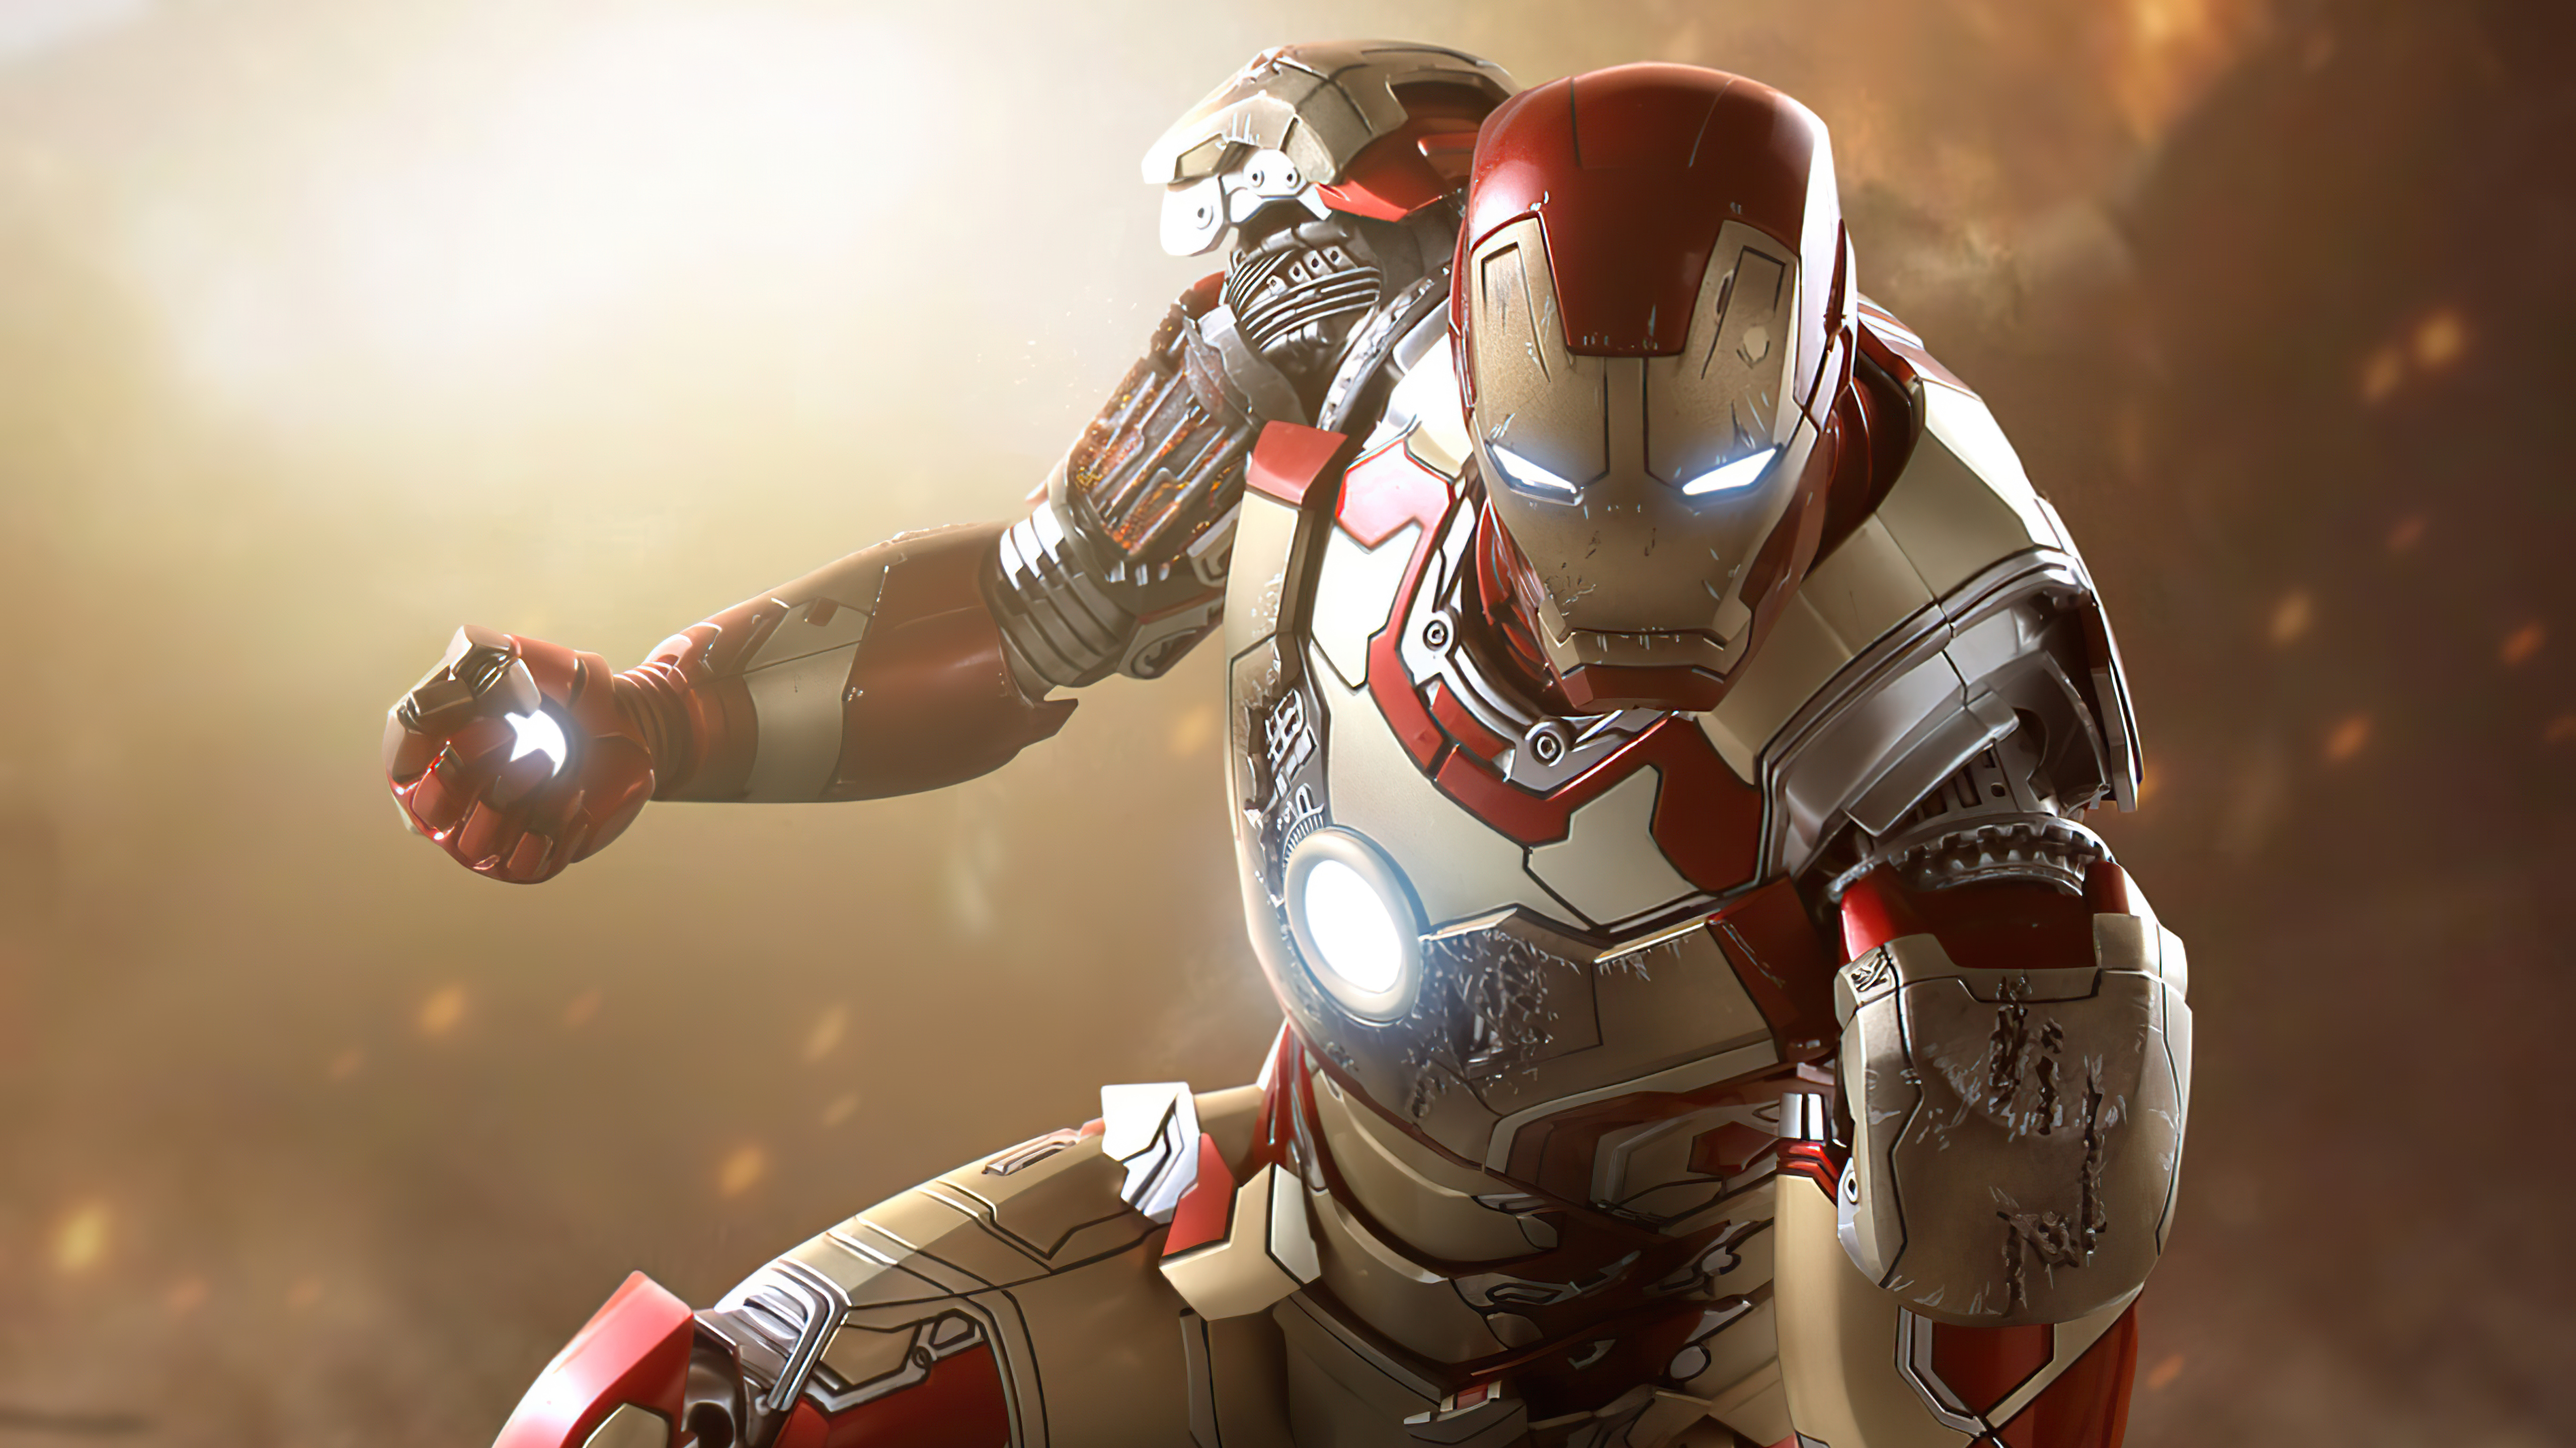 Bạn đang tìm kiếm một hình nền Iron Man chất lượng cao và đẹp mắt? Hãy xem qua bức ảnh nền Iron Man này. Với sự kết hợp hoàn hảo giữa màu sắc sáng bóng và chi tiết chân thực, hình nền này sẽ khiến cho màn hình máy tính của bạn trở nên đẹp hơn bao giờ hết.